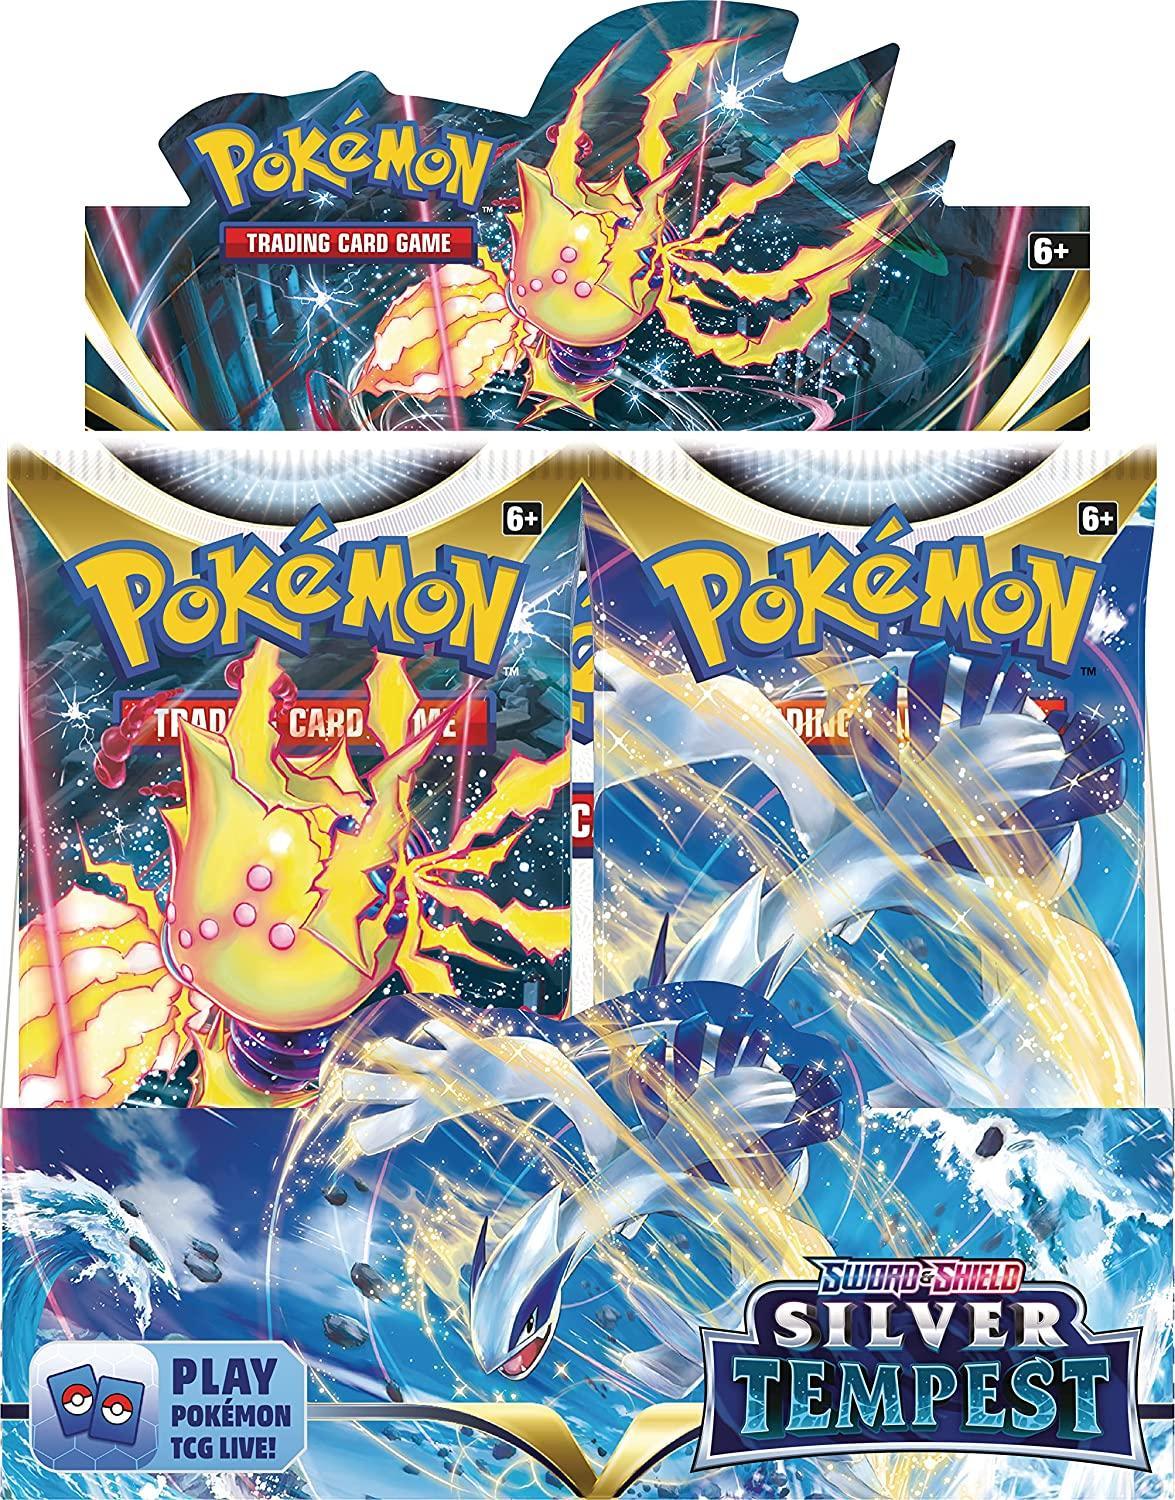 Pokemon: Sword & Shield Silver Tempest - Booster Box